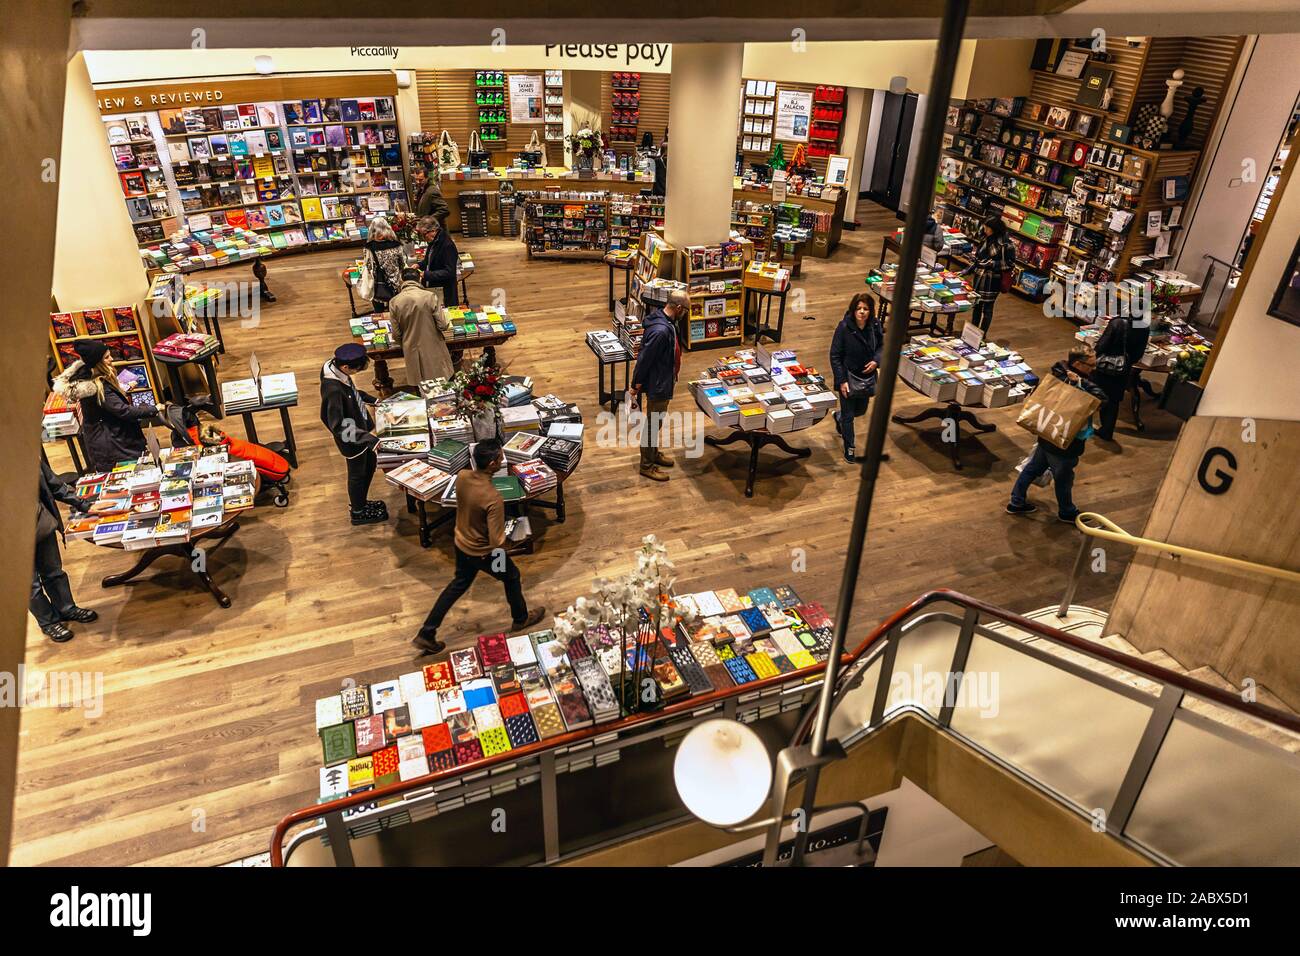 L'intérieur de la librairie Waterstone, Piccadilly, St James's, London, England, UK. Banque D'Images